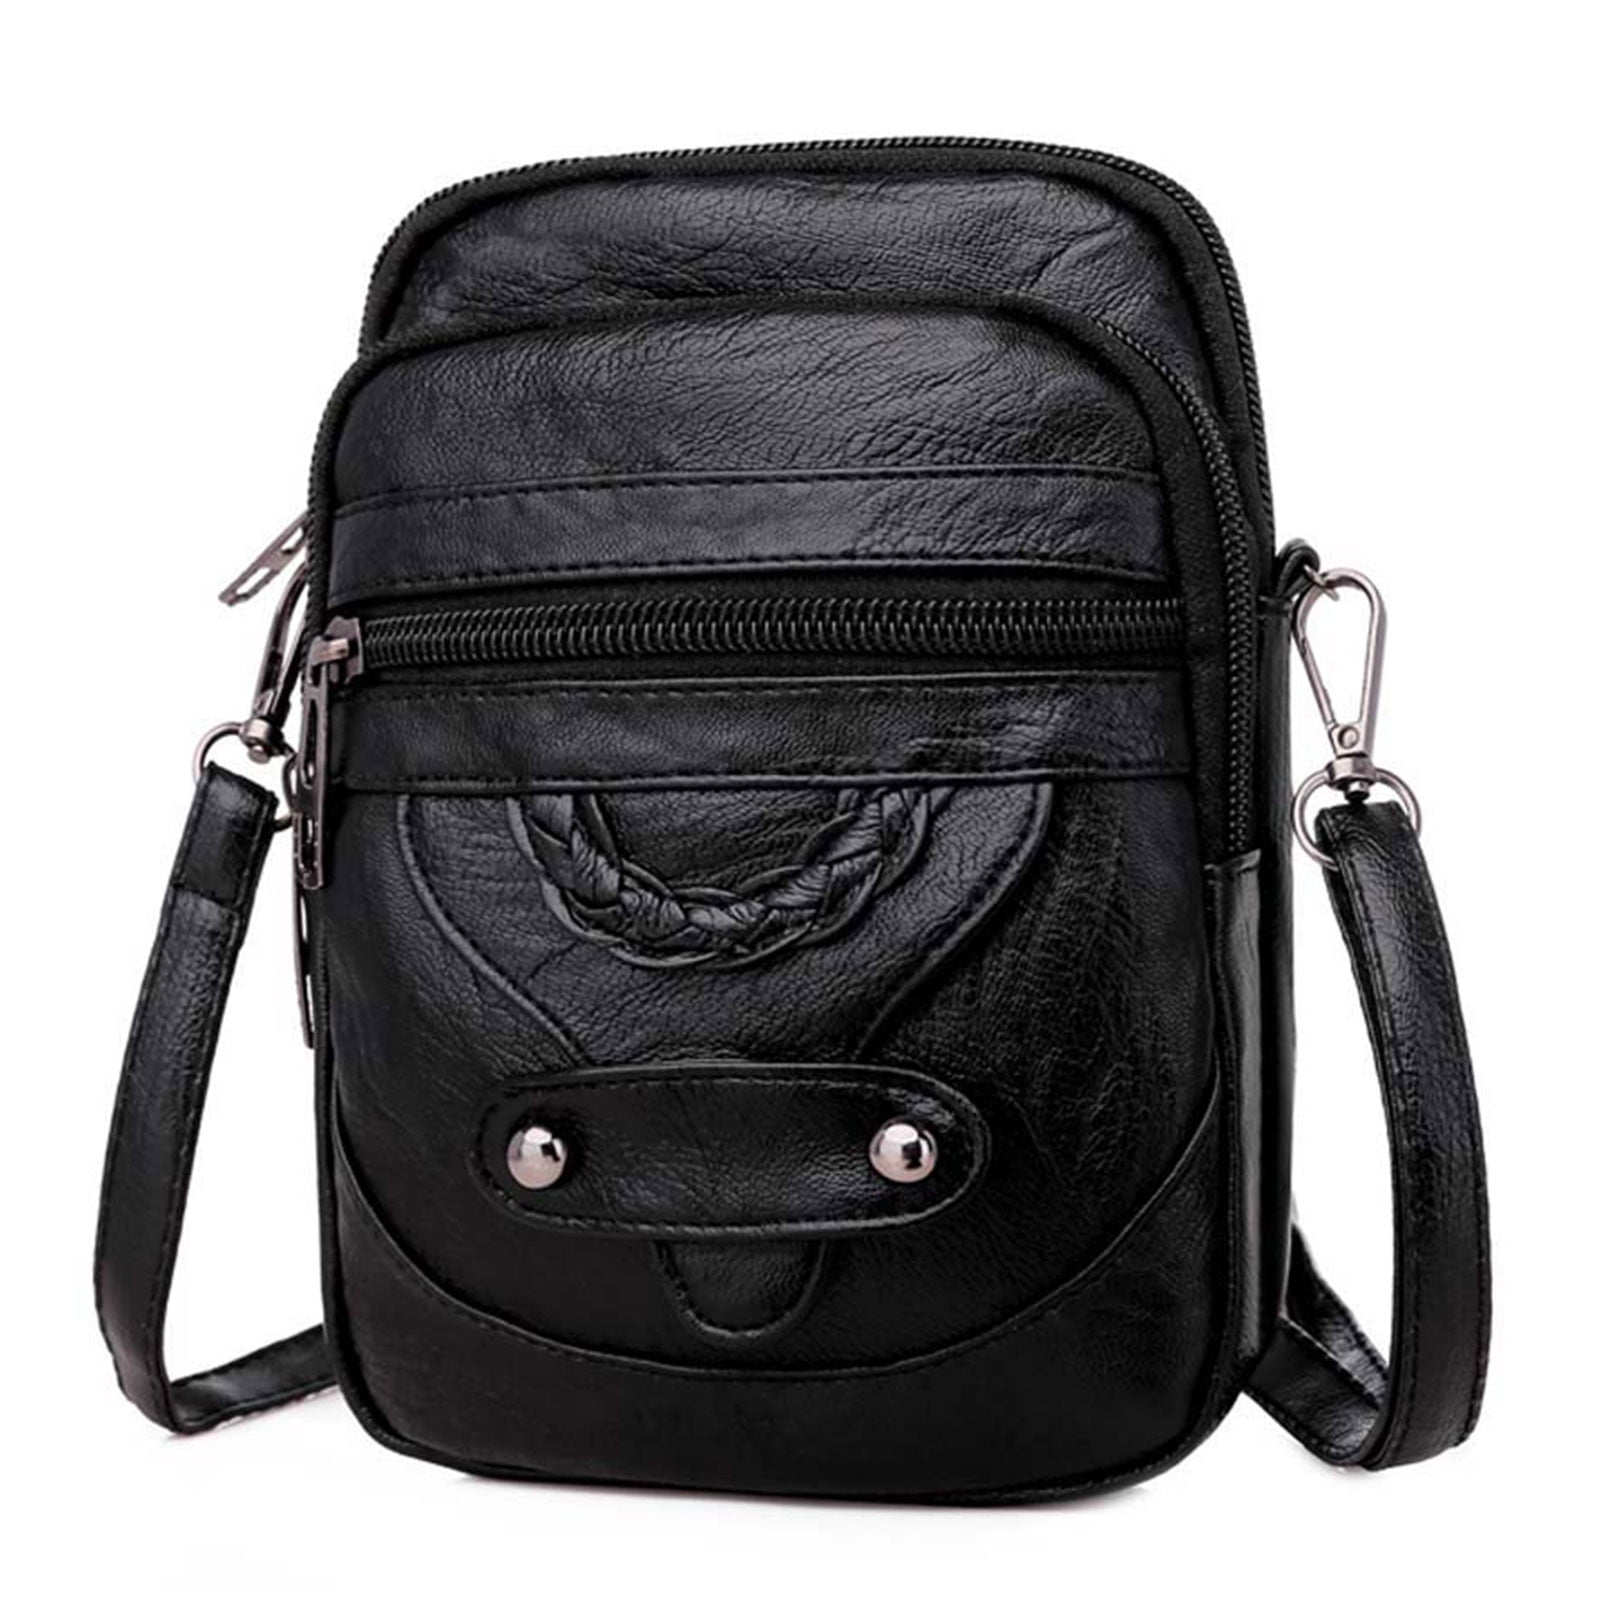 Leather bag knapsack messenger bag Pocketbook Bag Strap Crossbody Bags Shopping bag carrying bag Vintage handbag tote Crossbody Bag